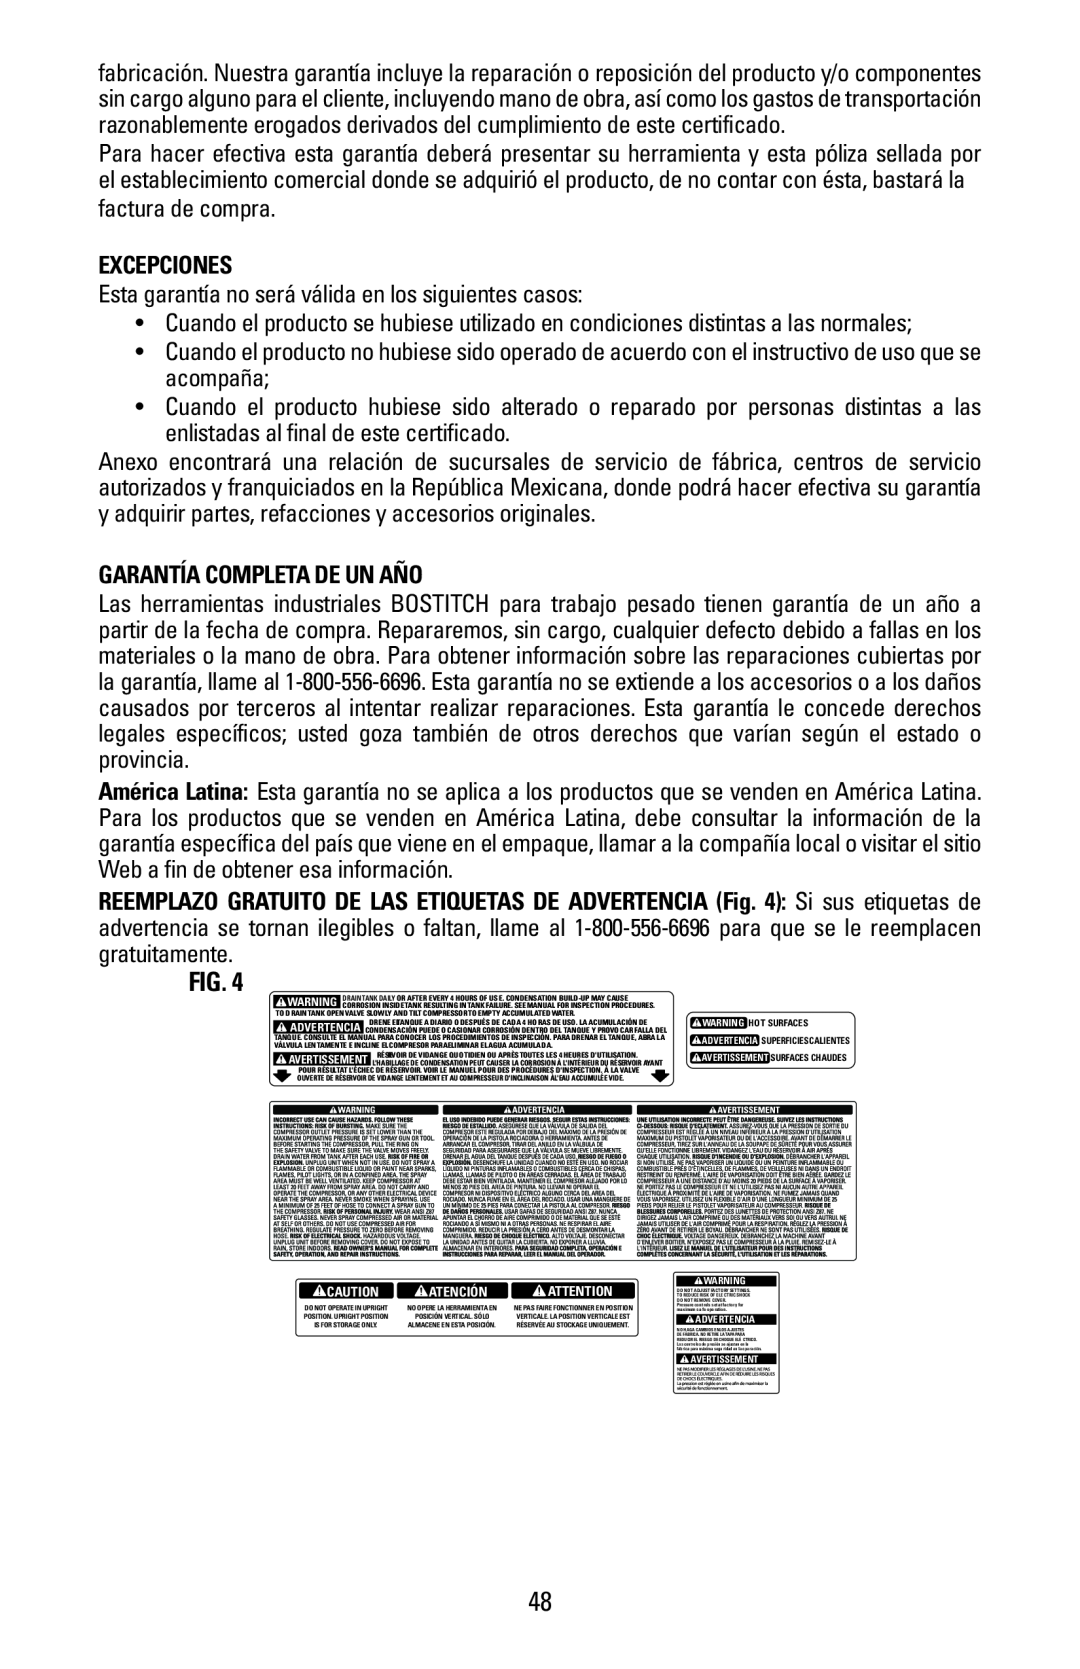 Bostitch CAP1645-OF owner manual Excepciones, Garantía Completa De Un Año, Fig 